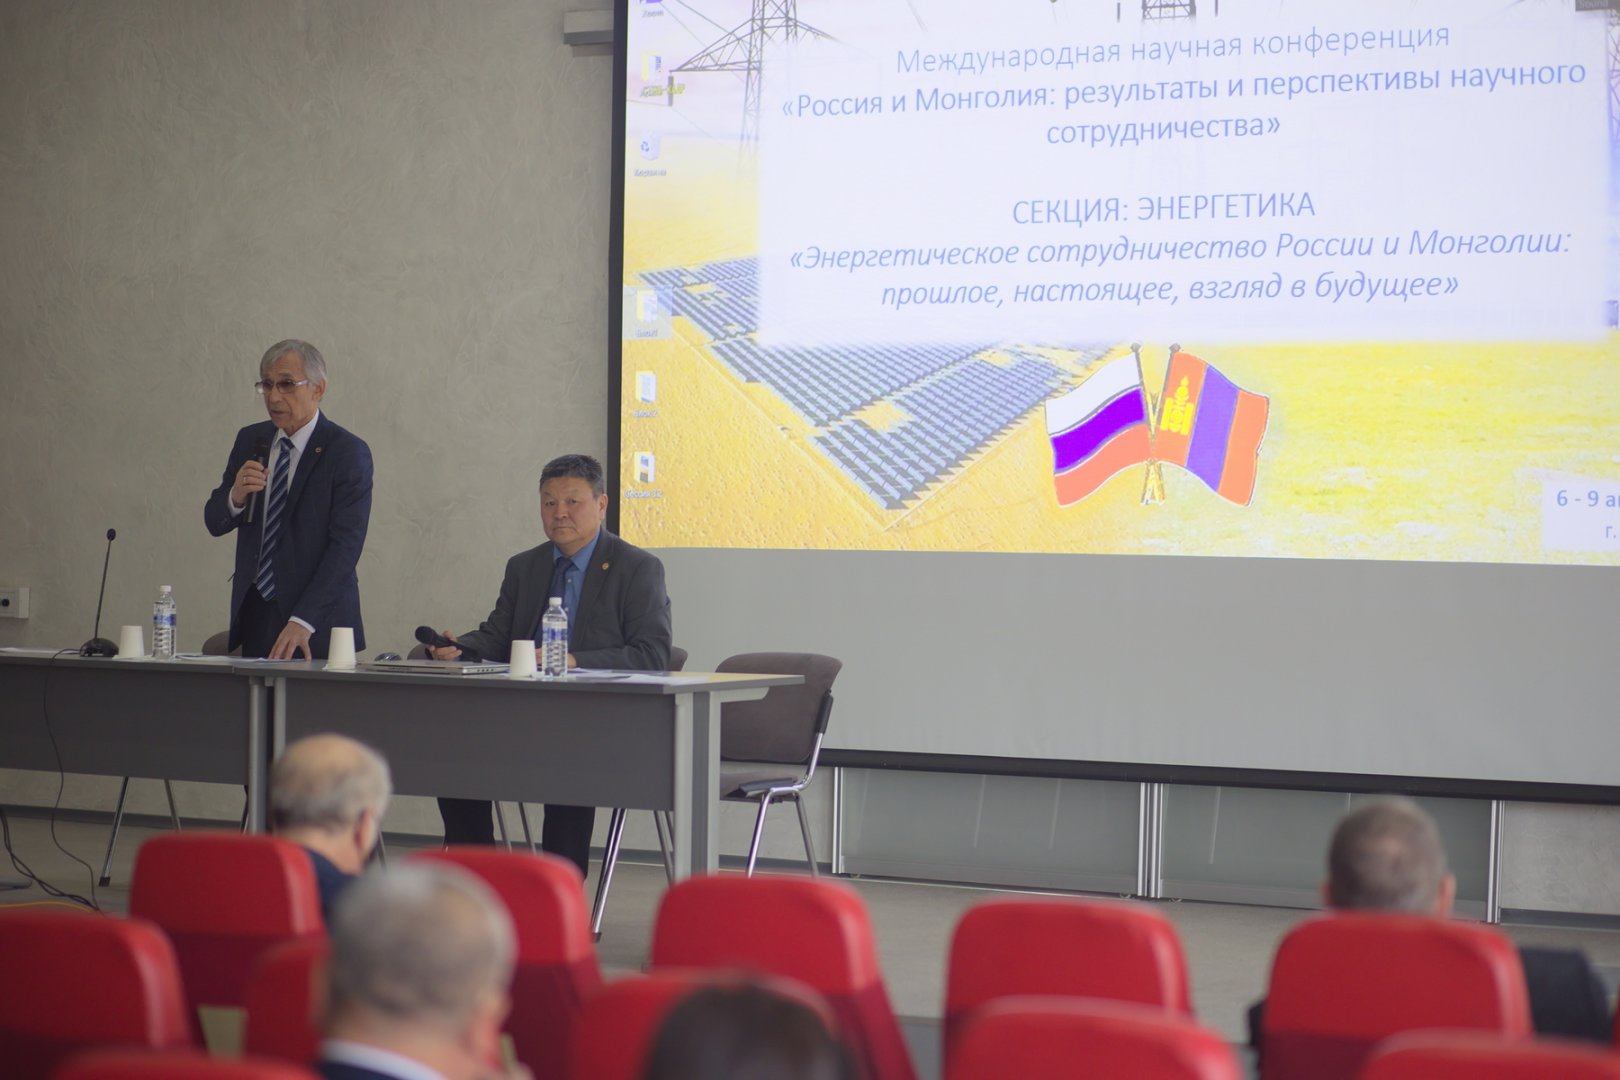 В Иркутске начала работу международная научная конференция «Россия и Монголия: результаты и перспективы научного сотрудничества»